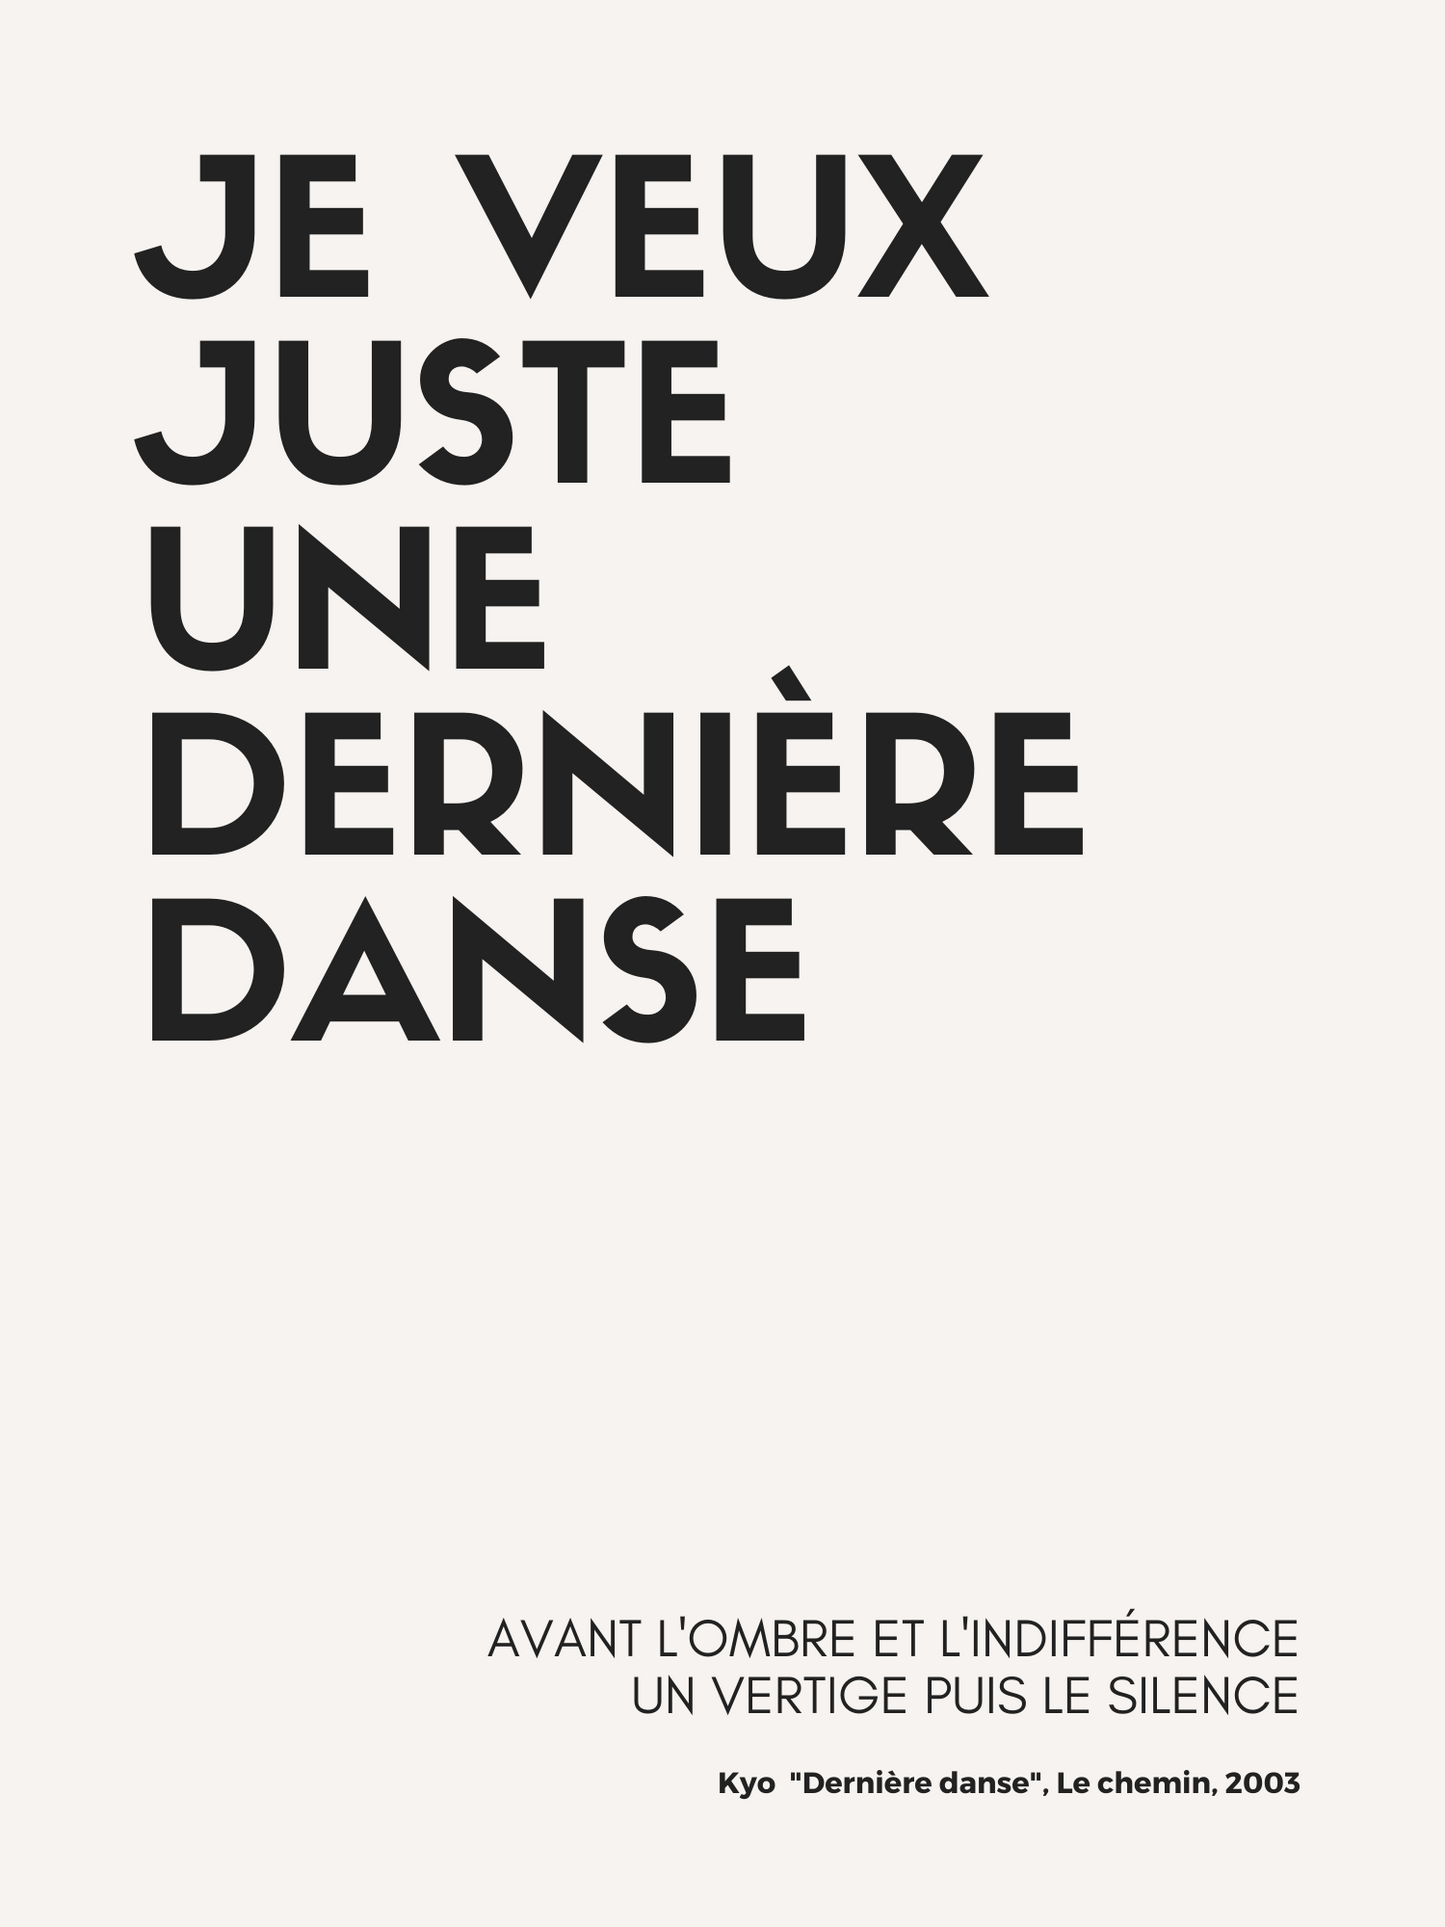 Affiche "Je veux juste une dernière danse" inspirée par Kyo